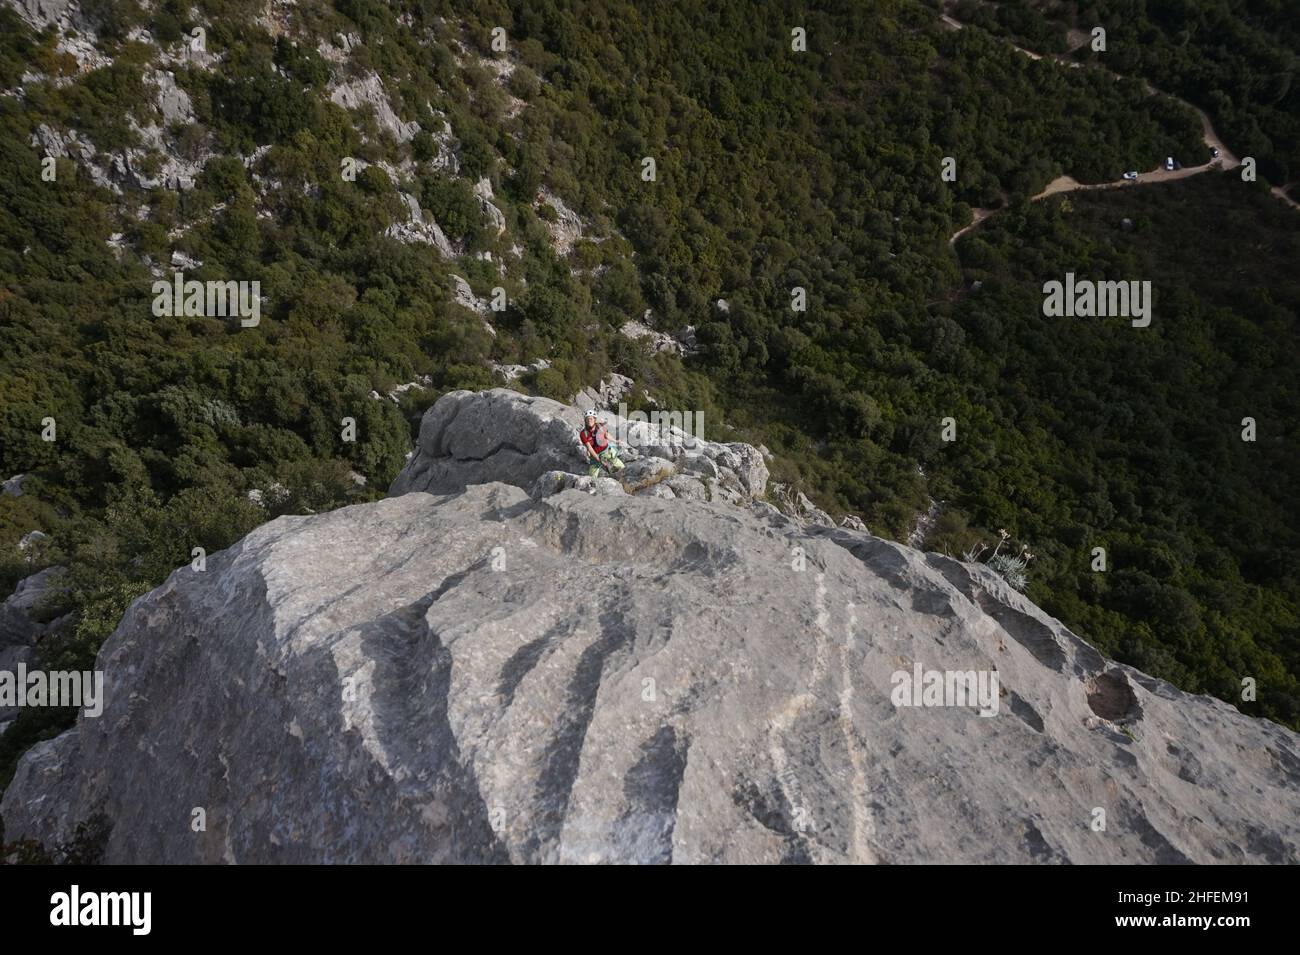 Klettern im wilden Hinterland Sardiniens Stock Photo